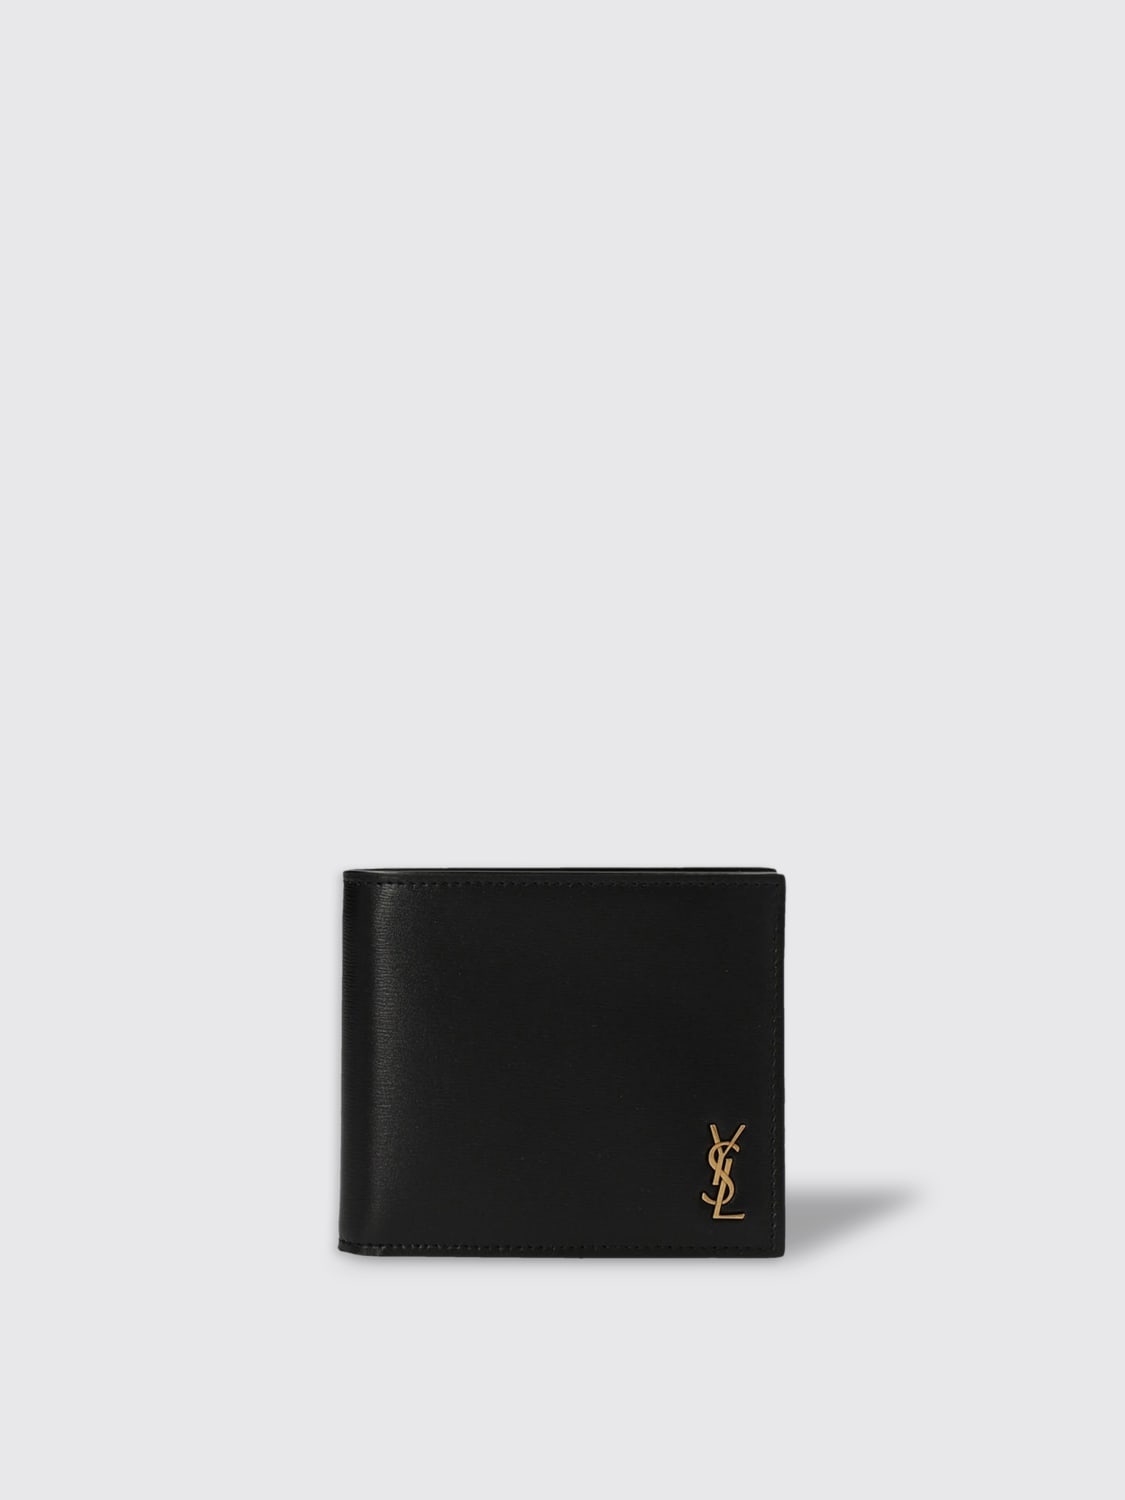 Saint Laurent leather wallet - 1